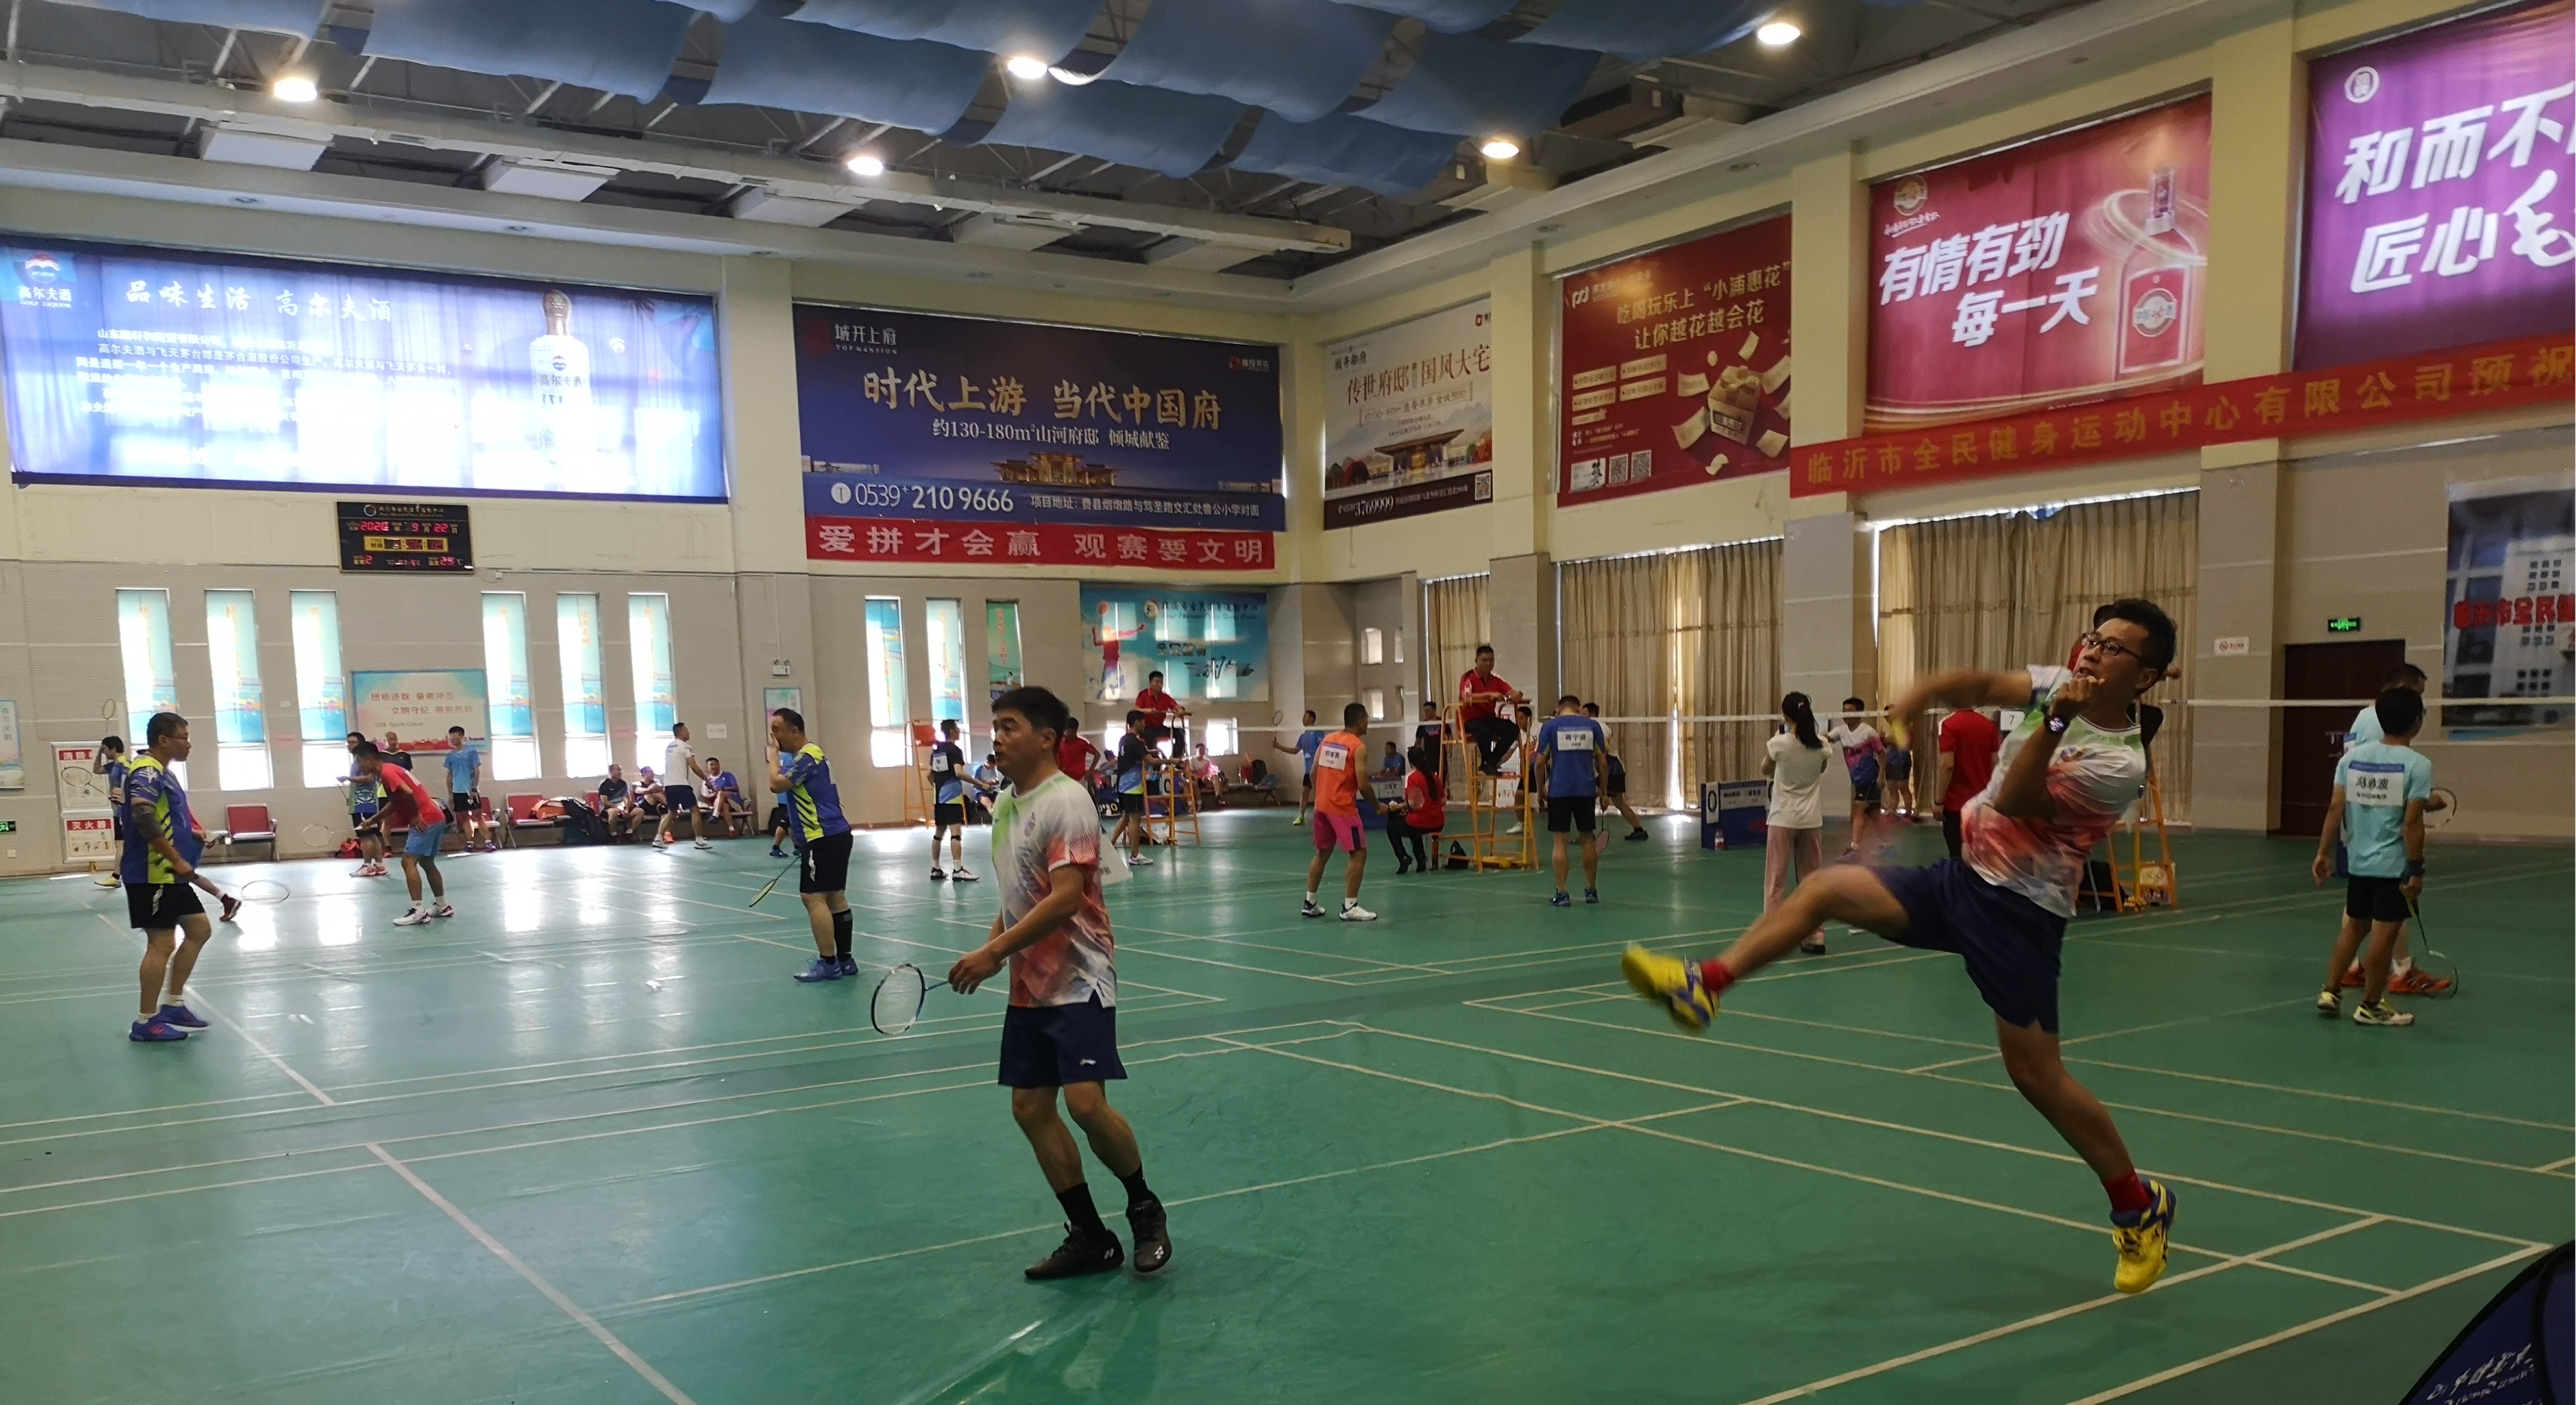 臨沂國控集團代表隊參加臨沂市第七屆運動會高水平組羽毛球比賽